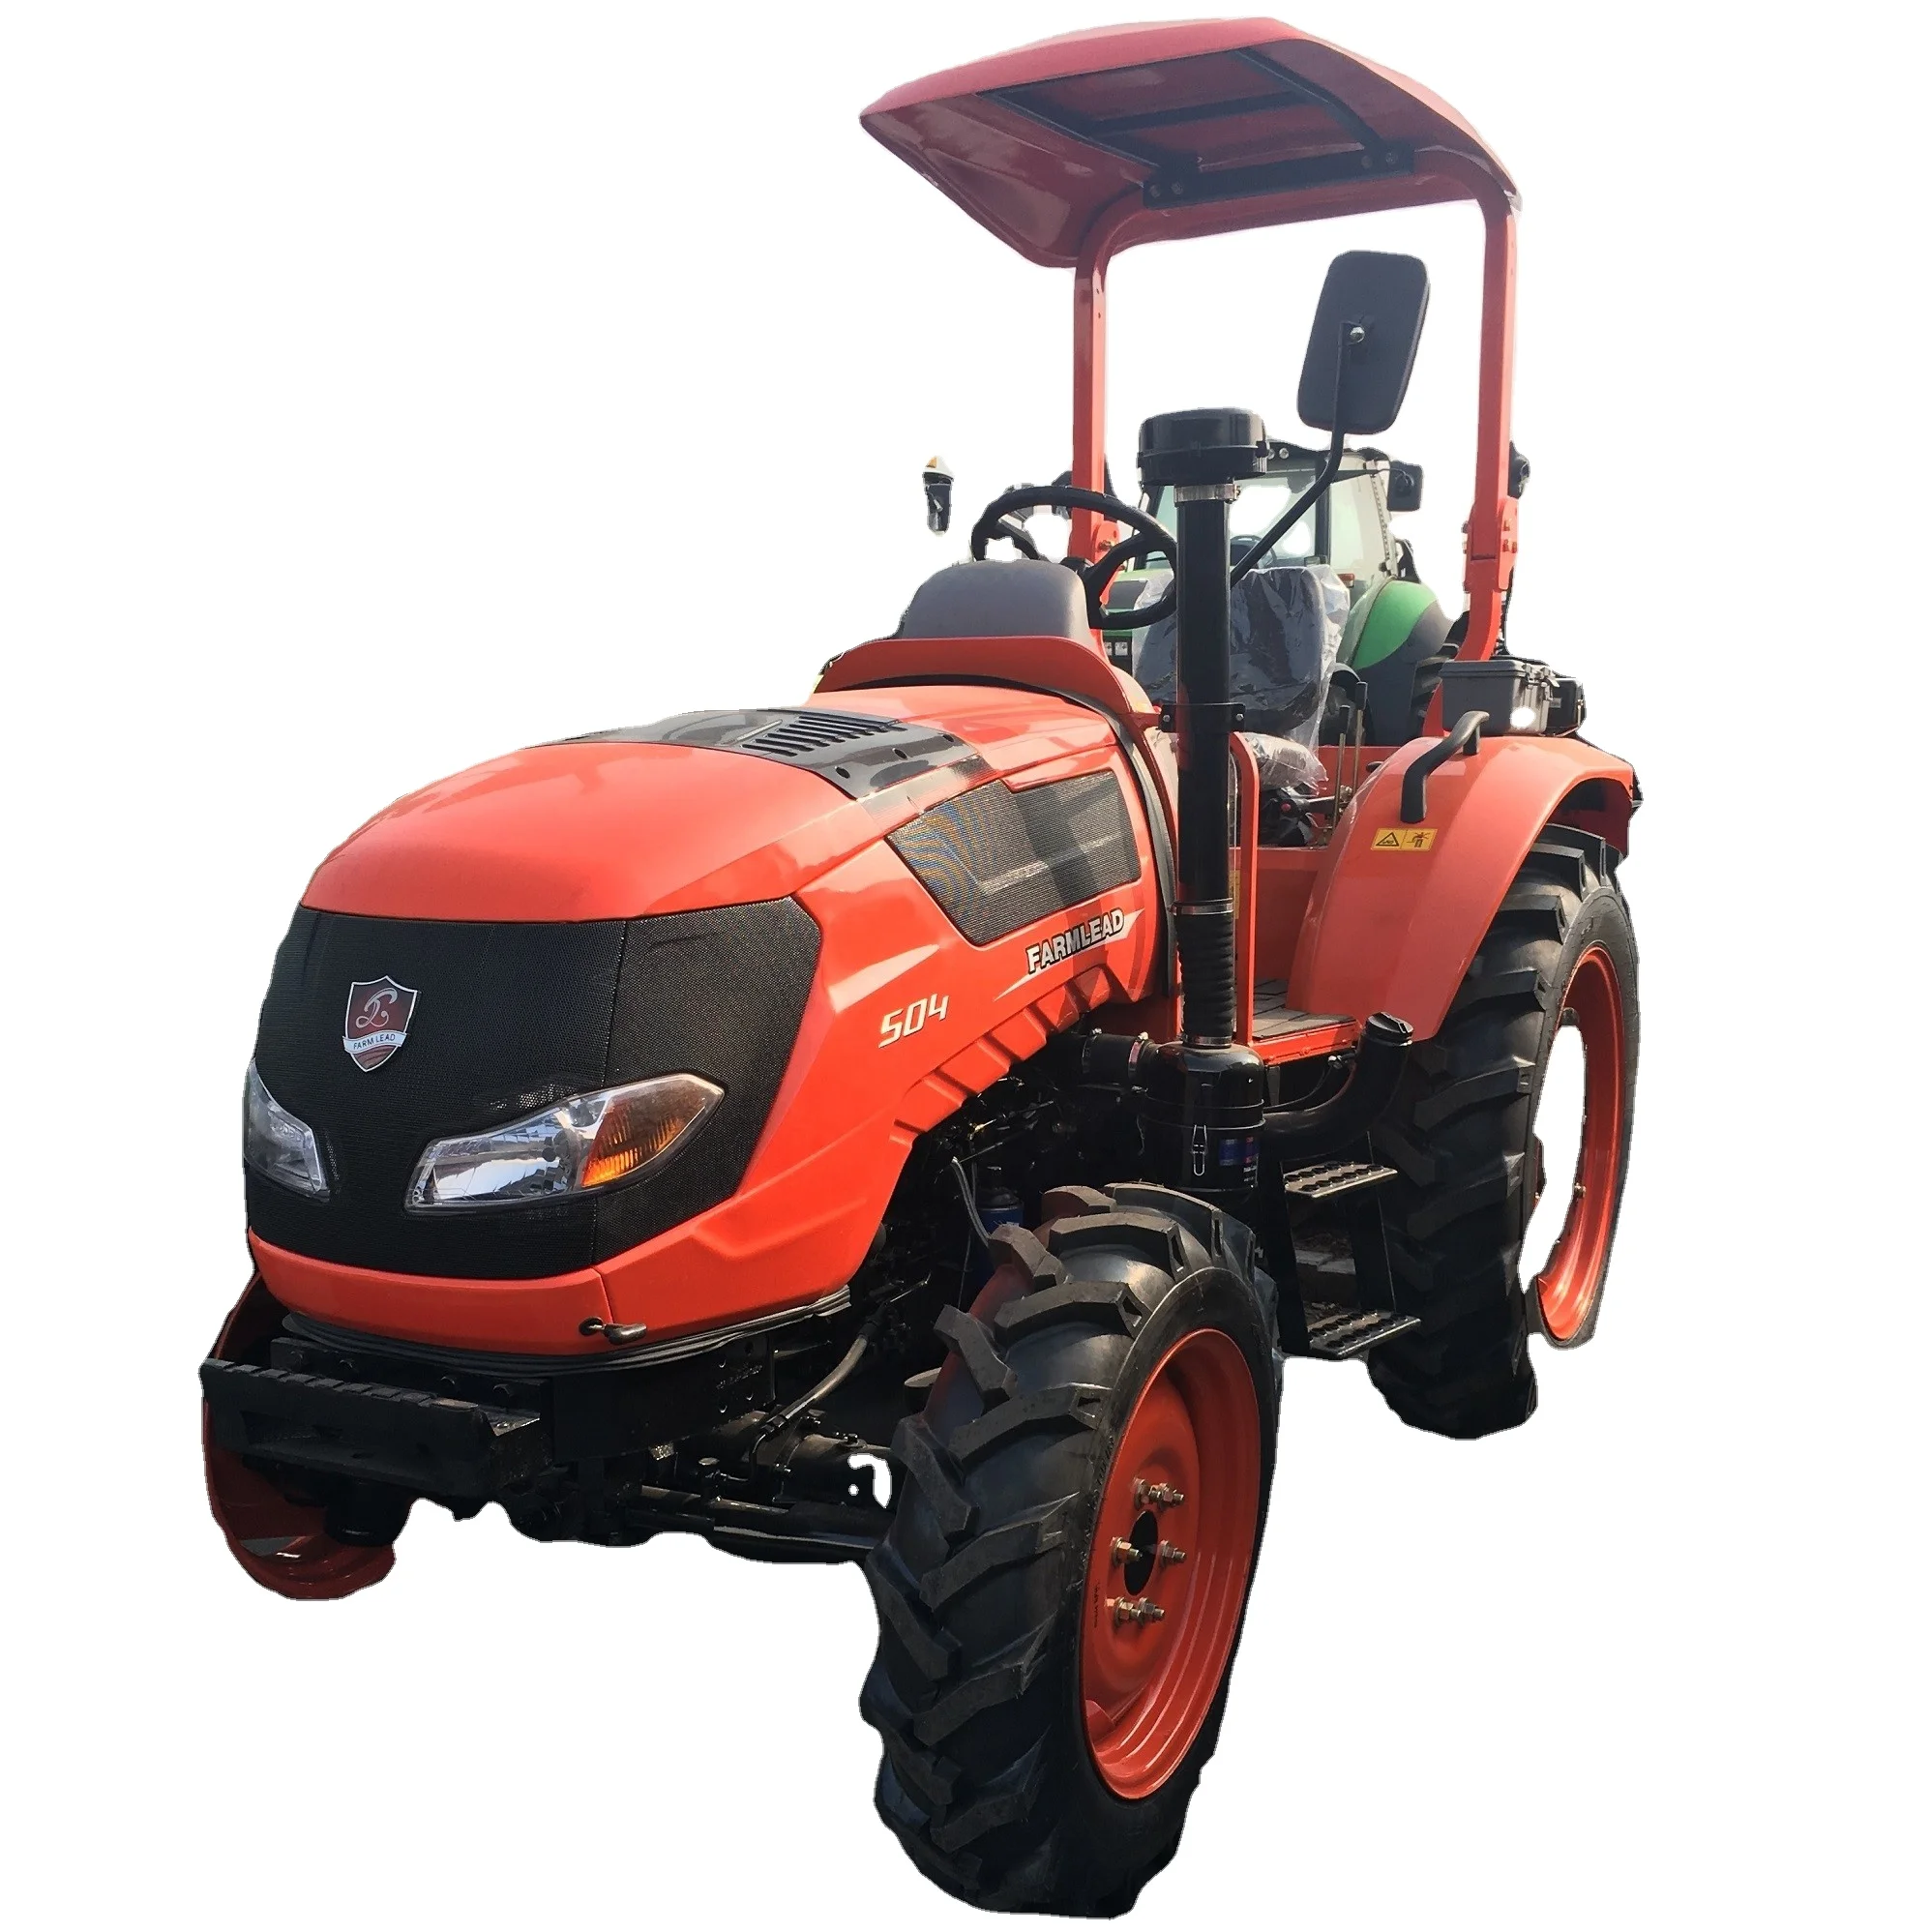 Kubota NEW G261HD Ride-On Mower kobota tractor